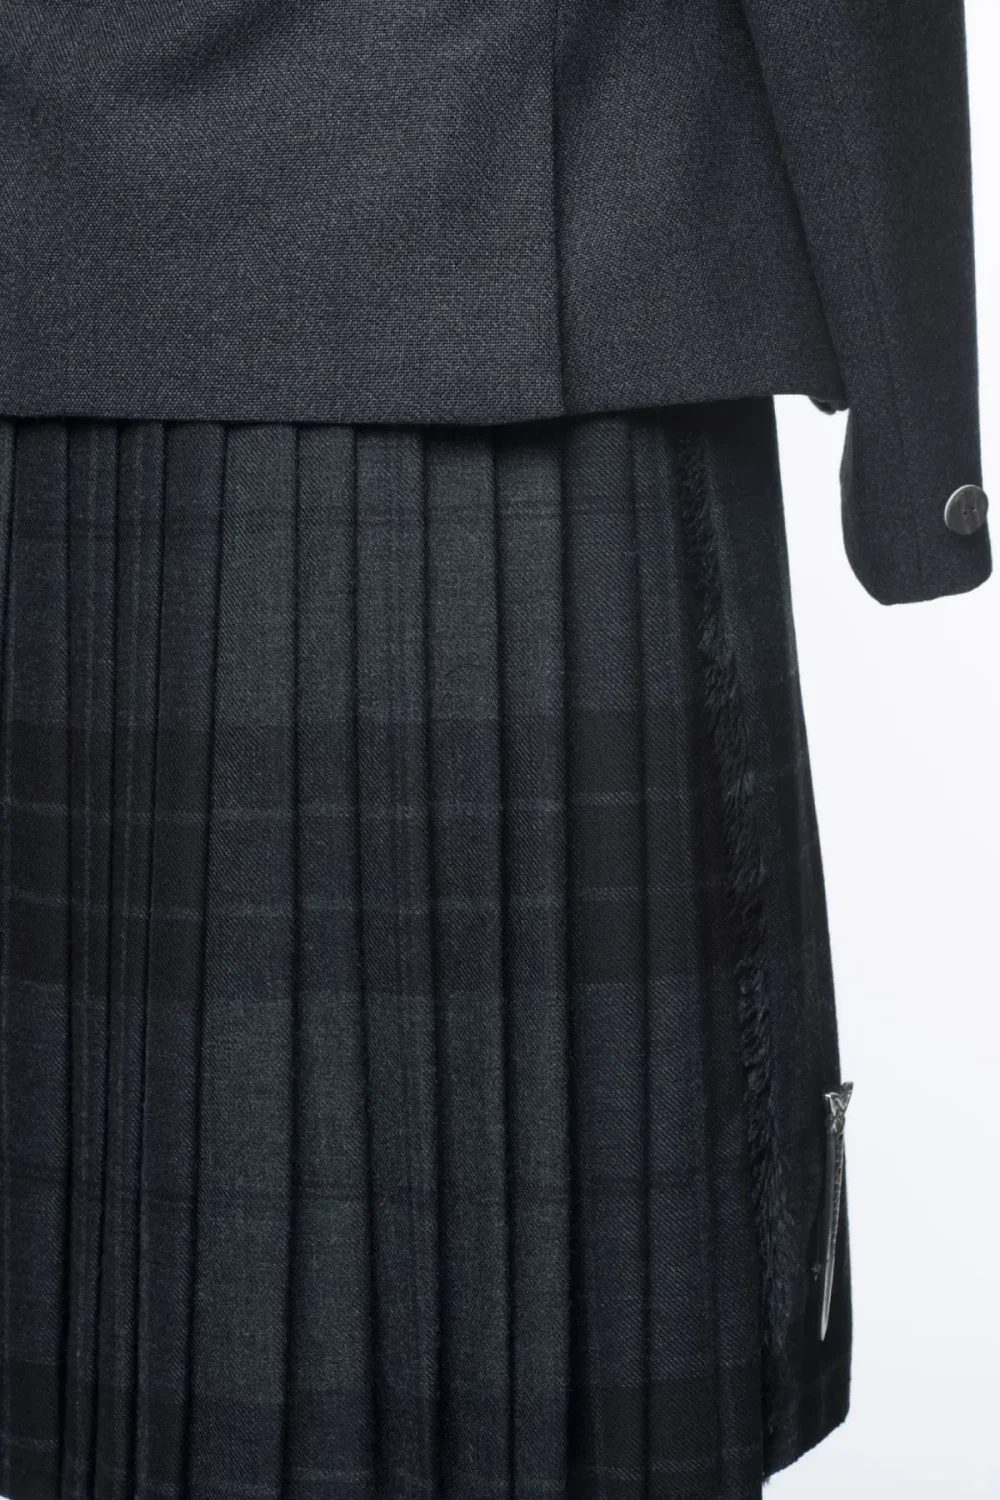 Une photo de dos de la tenue Tweed Kilt.